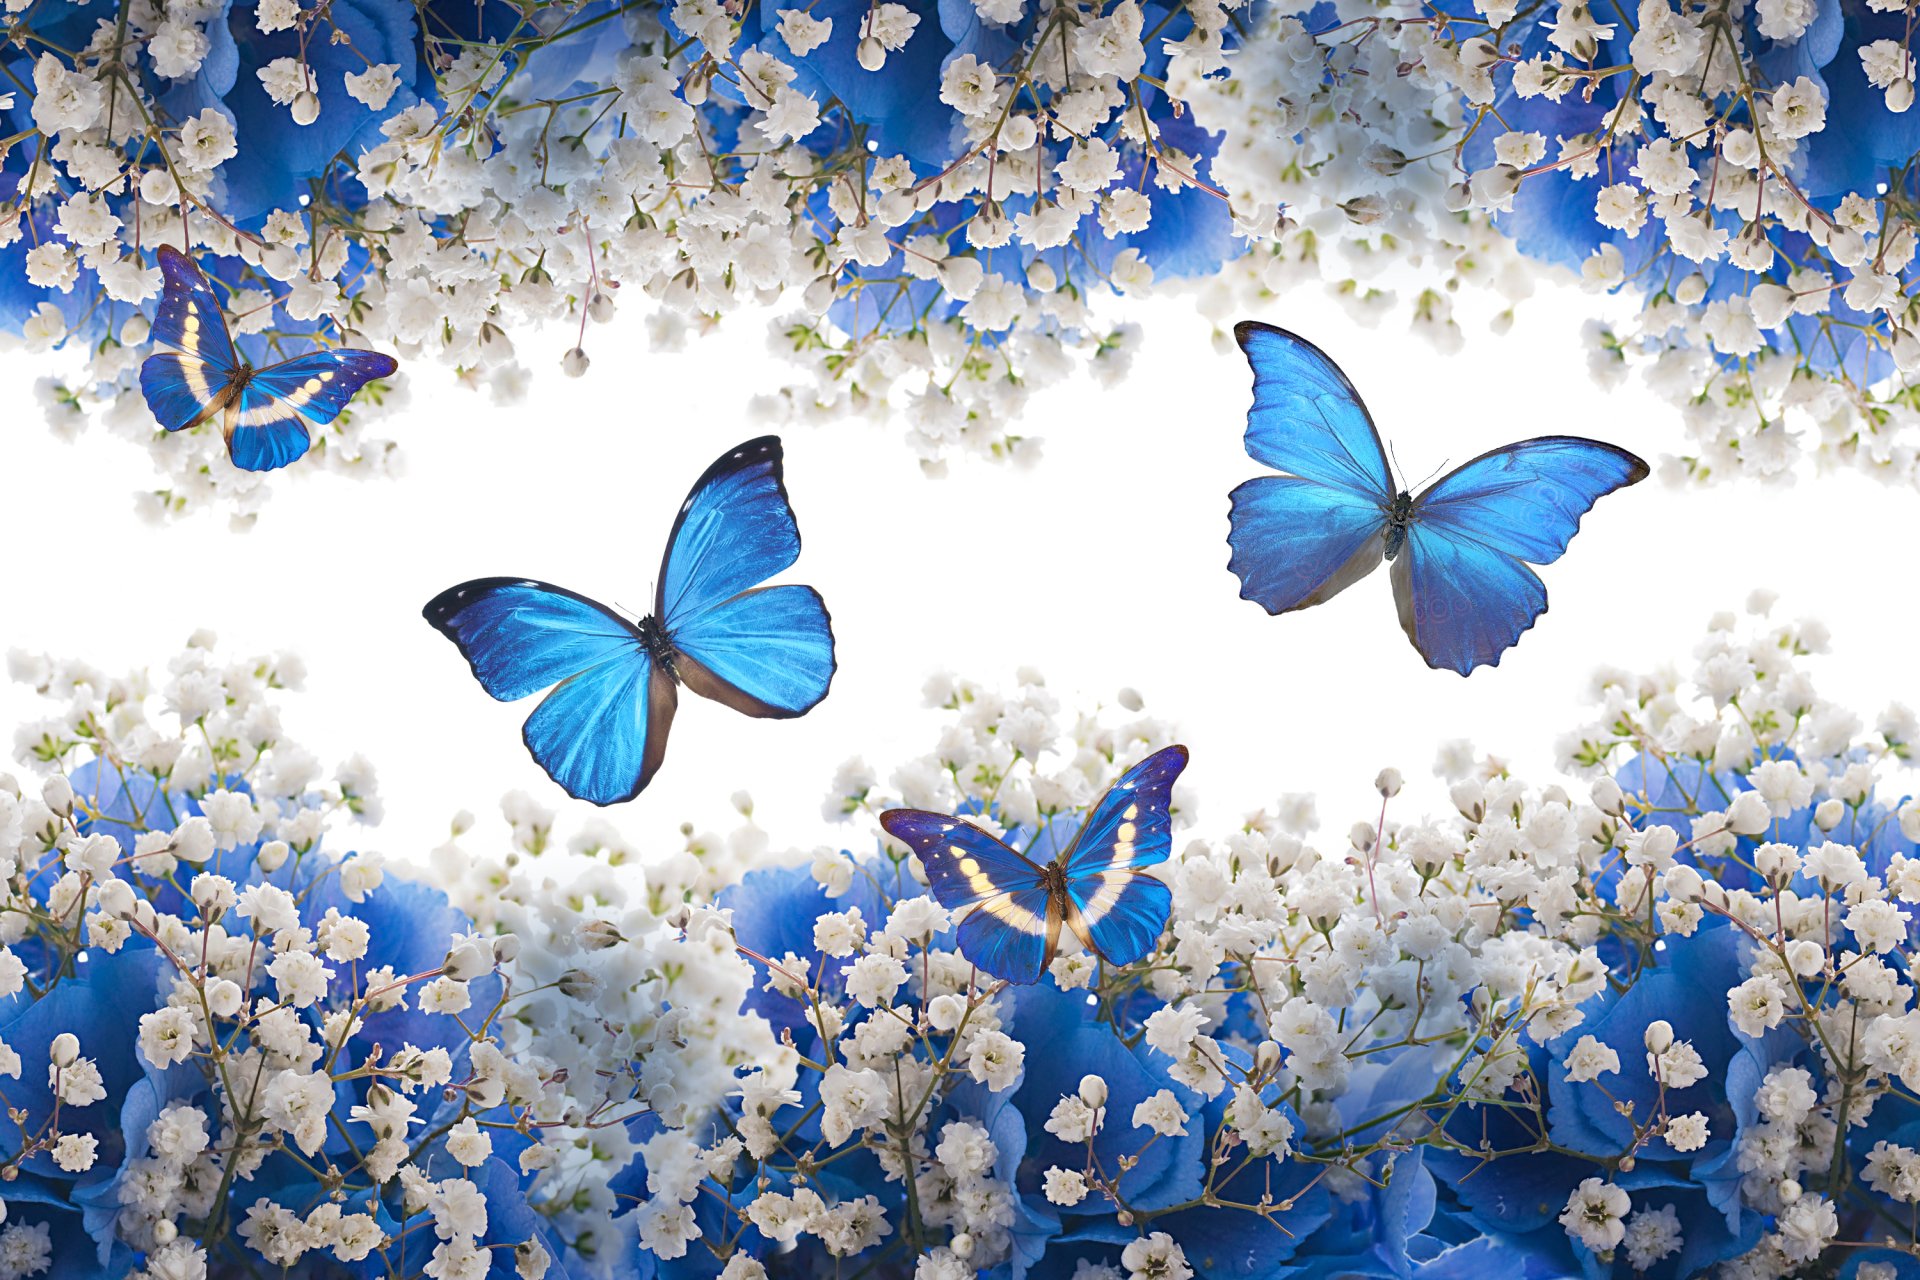 mariposas wallpaper,blue,butterfly,insect,moths and butterflies,azure